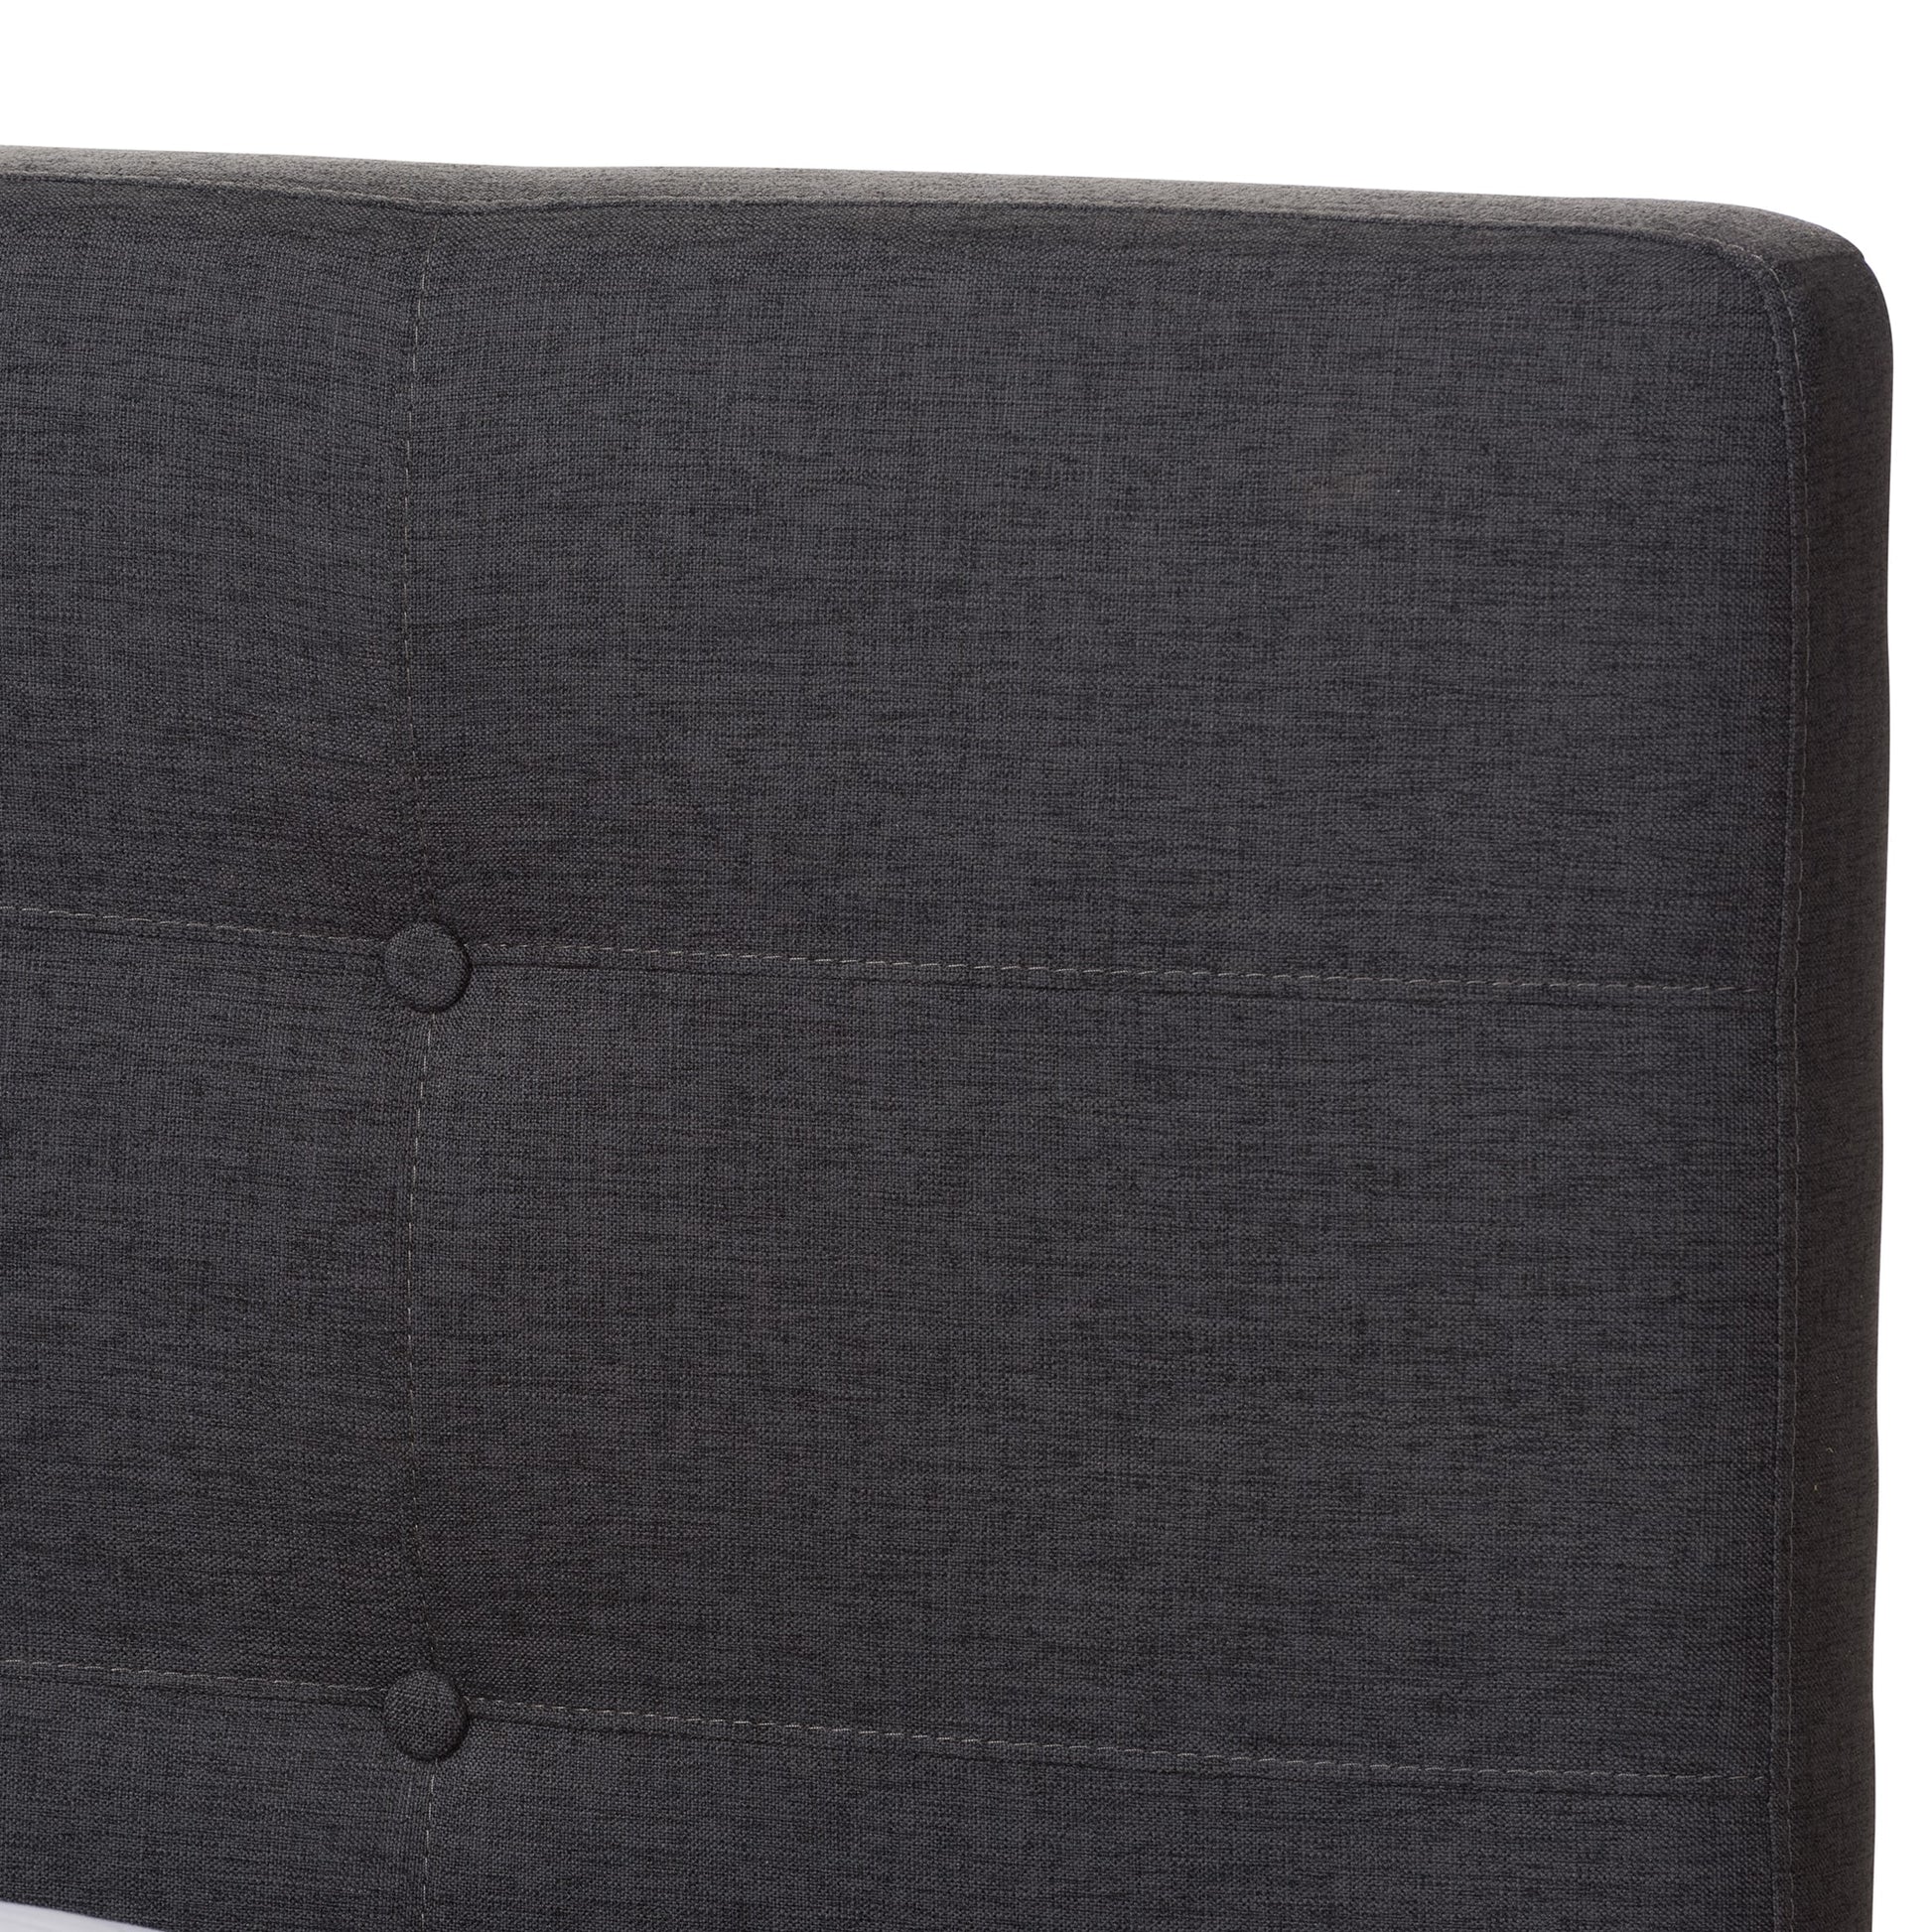 baxton studio valencia mid century modern dark grey fabric queen size platform bed | Modish Furniture Store-15